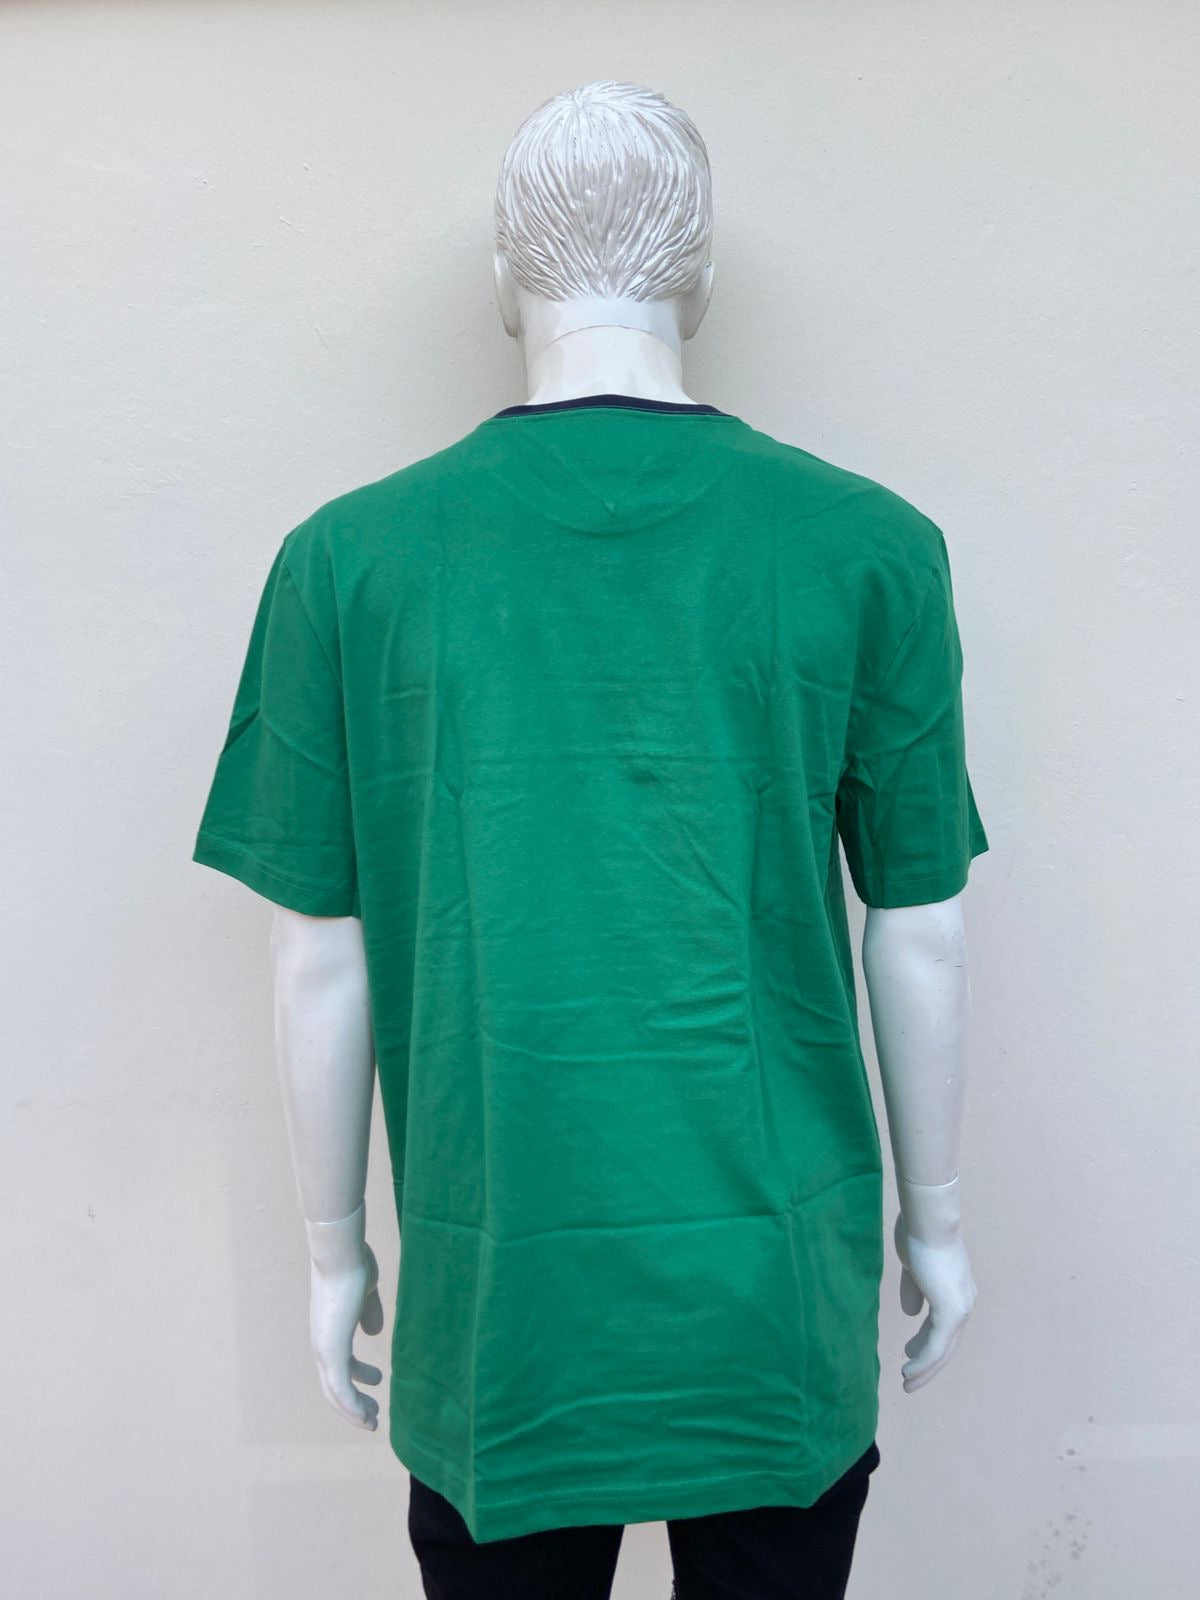 T-shirt Tommy Hilfiger original, verde con logotipo de la marca pequeña en frente y cuello azul marino.